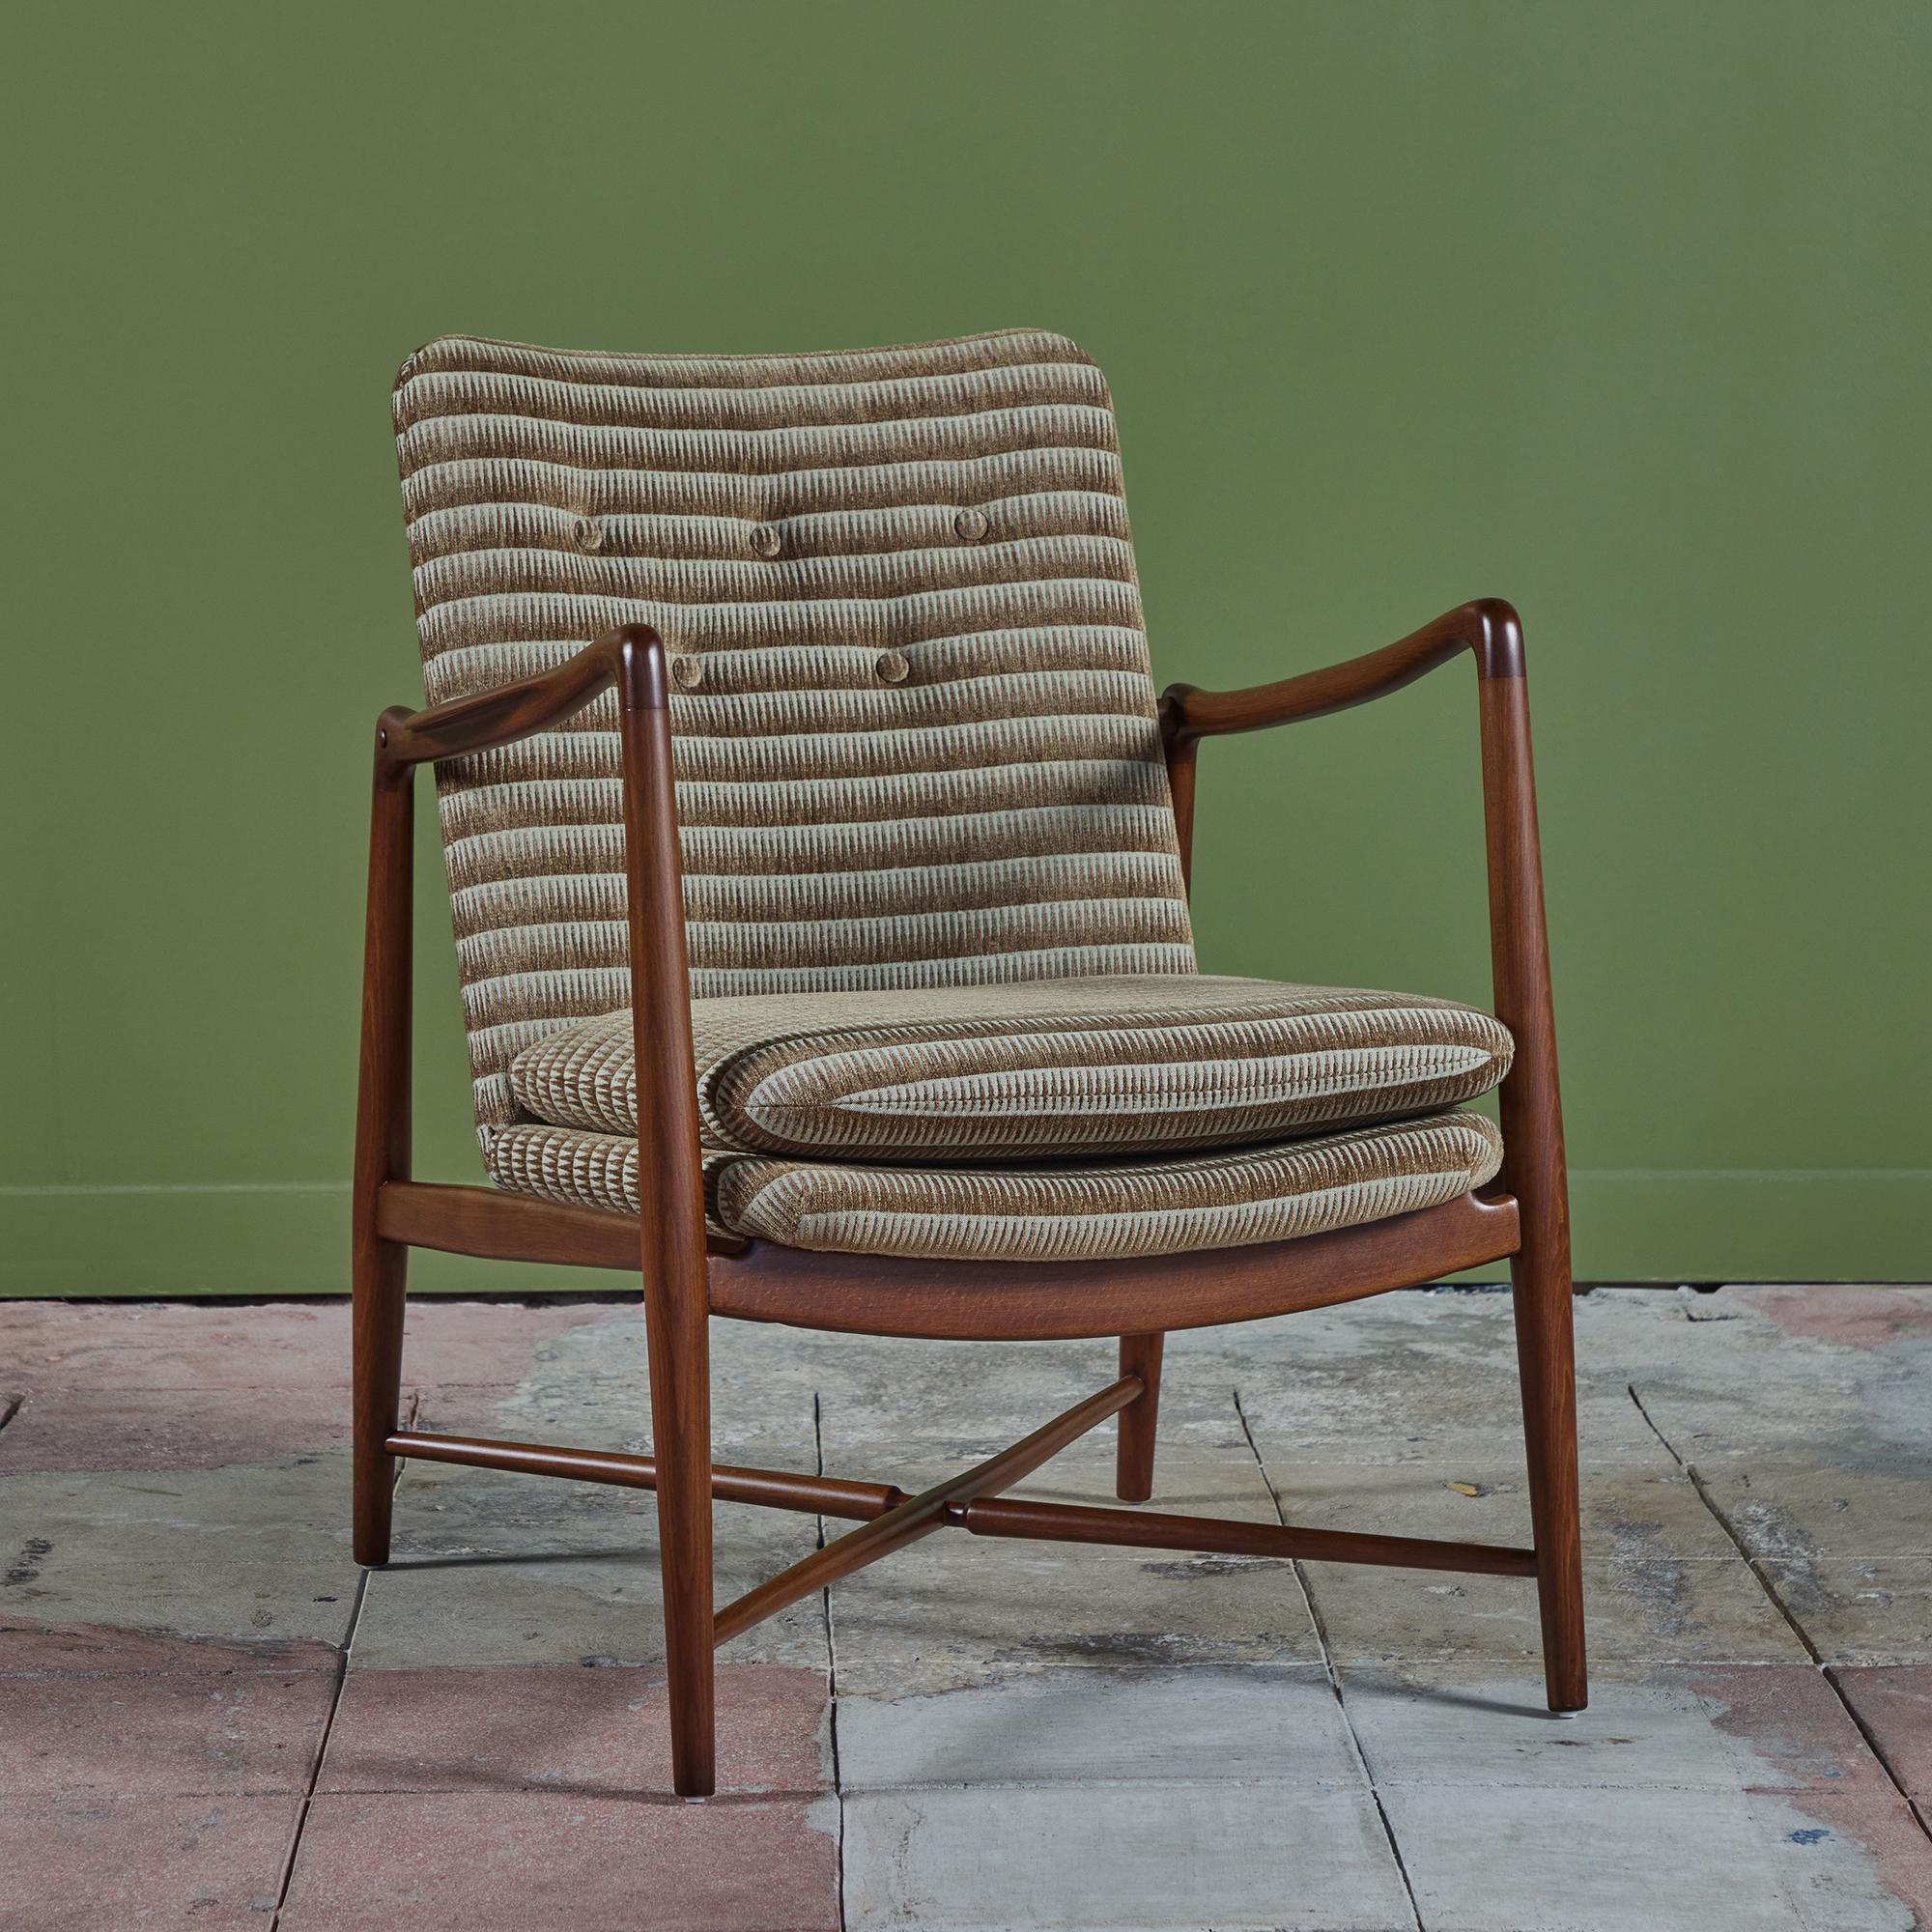 Conçue en 1946 par Finn Juhls pour Bovirke, la chaise longue Model BO-59 est un modèle rare aussi confortable que beau. Cette pièce a été entièrement restaurée en collaboration avec Elizabeth Law de Elizabeth Law Design. Née et élevée en Caroline du